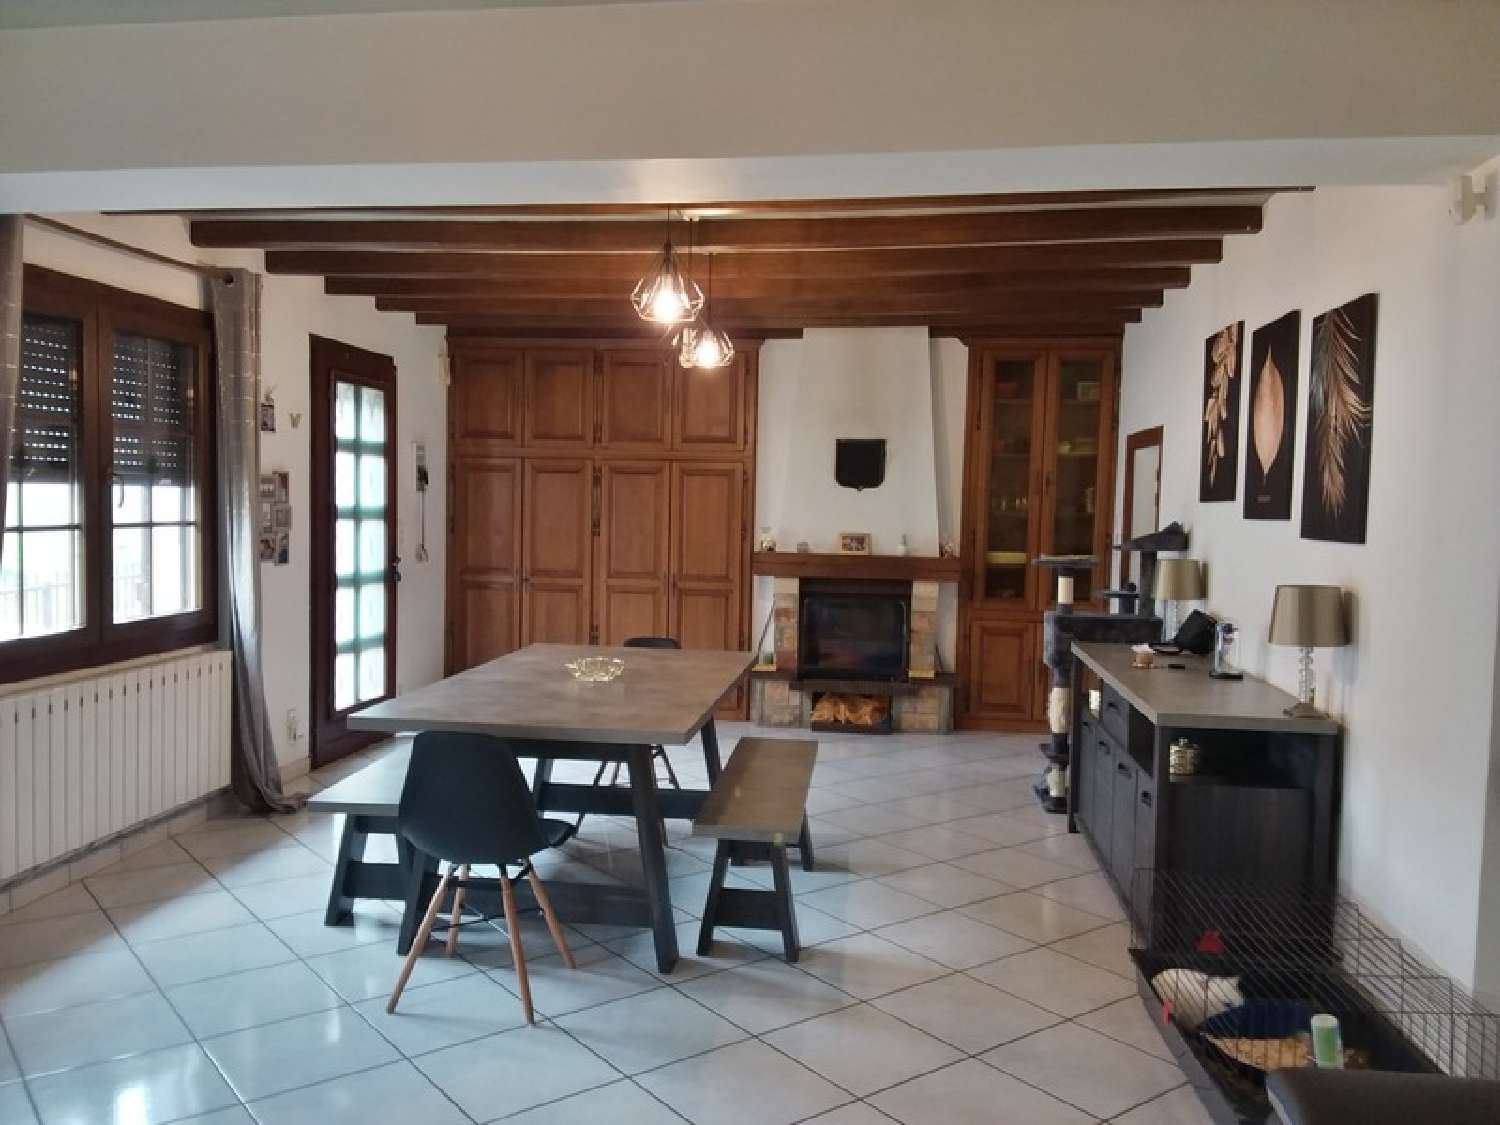  à vendre maison Lamarche-sur-Saône Côte-d'Or 4